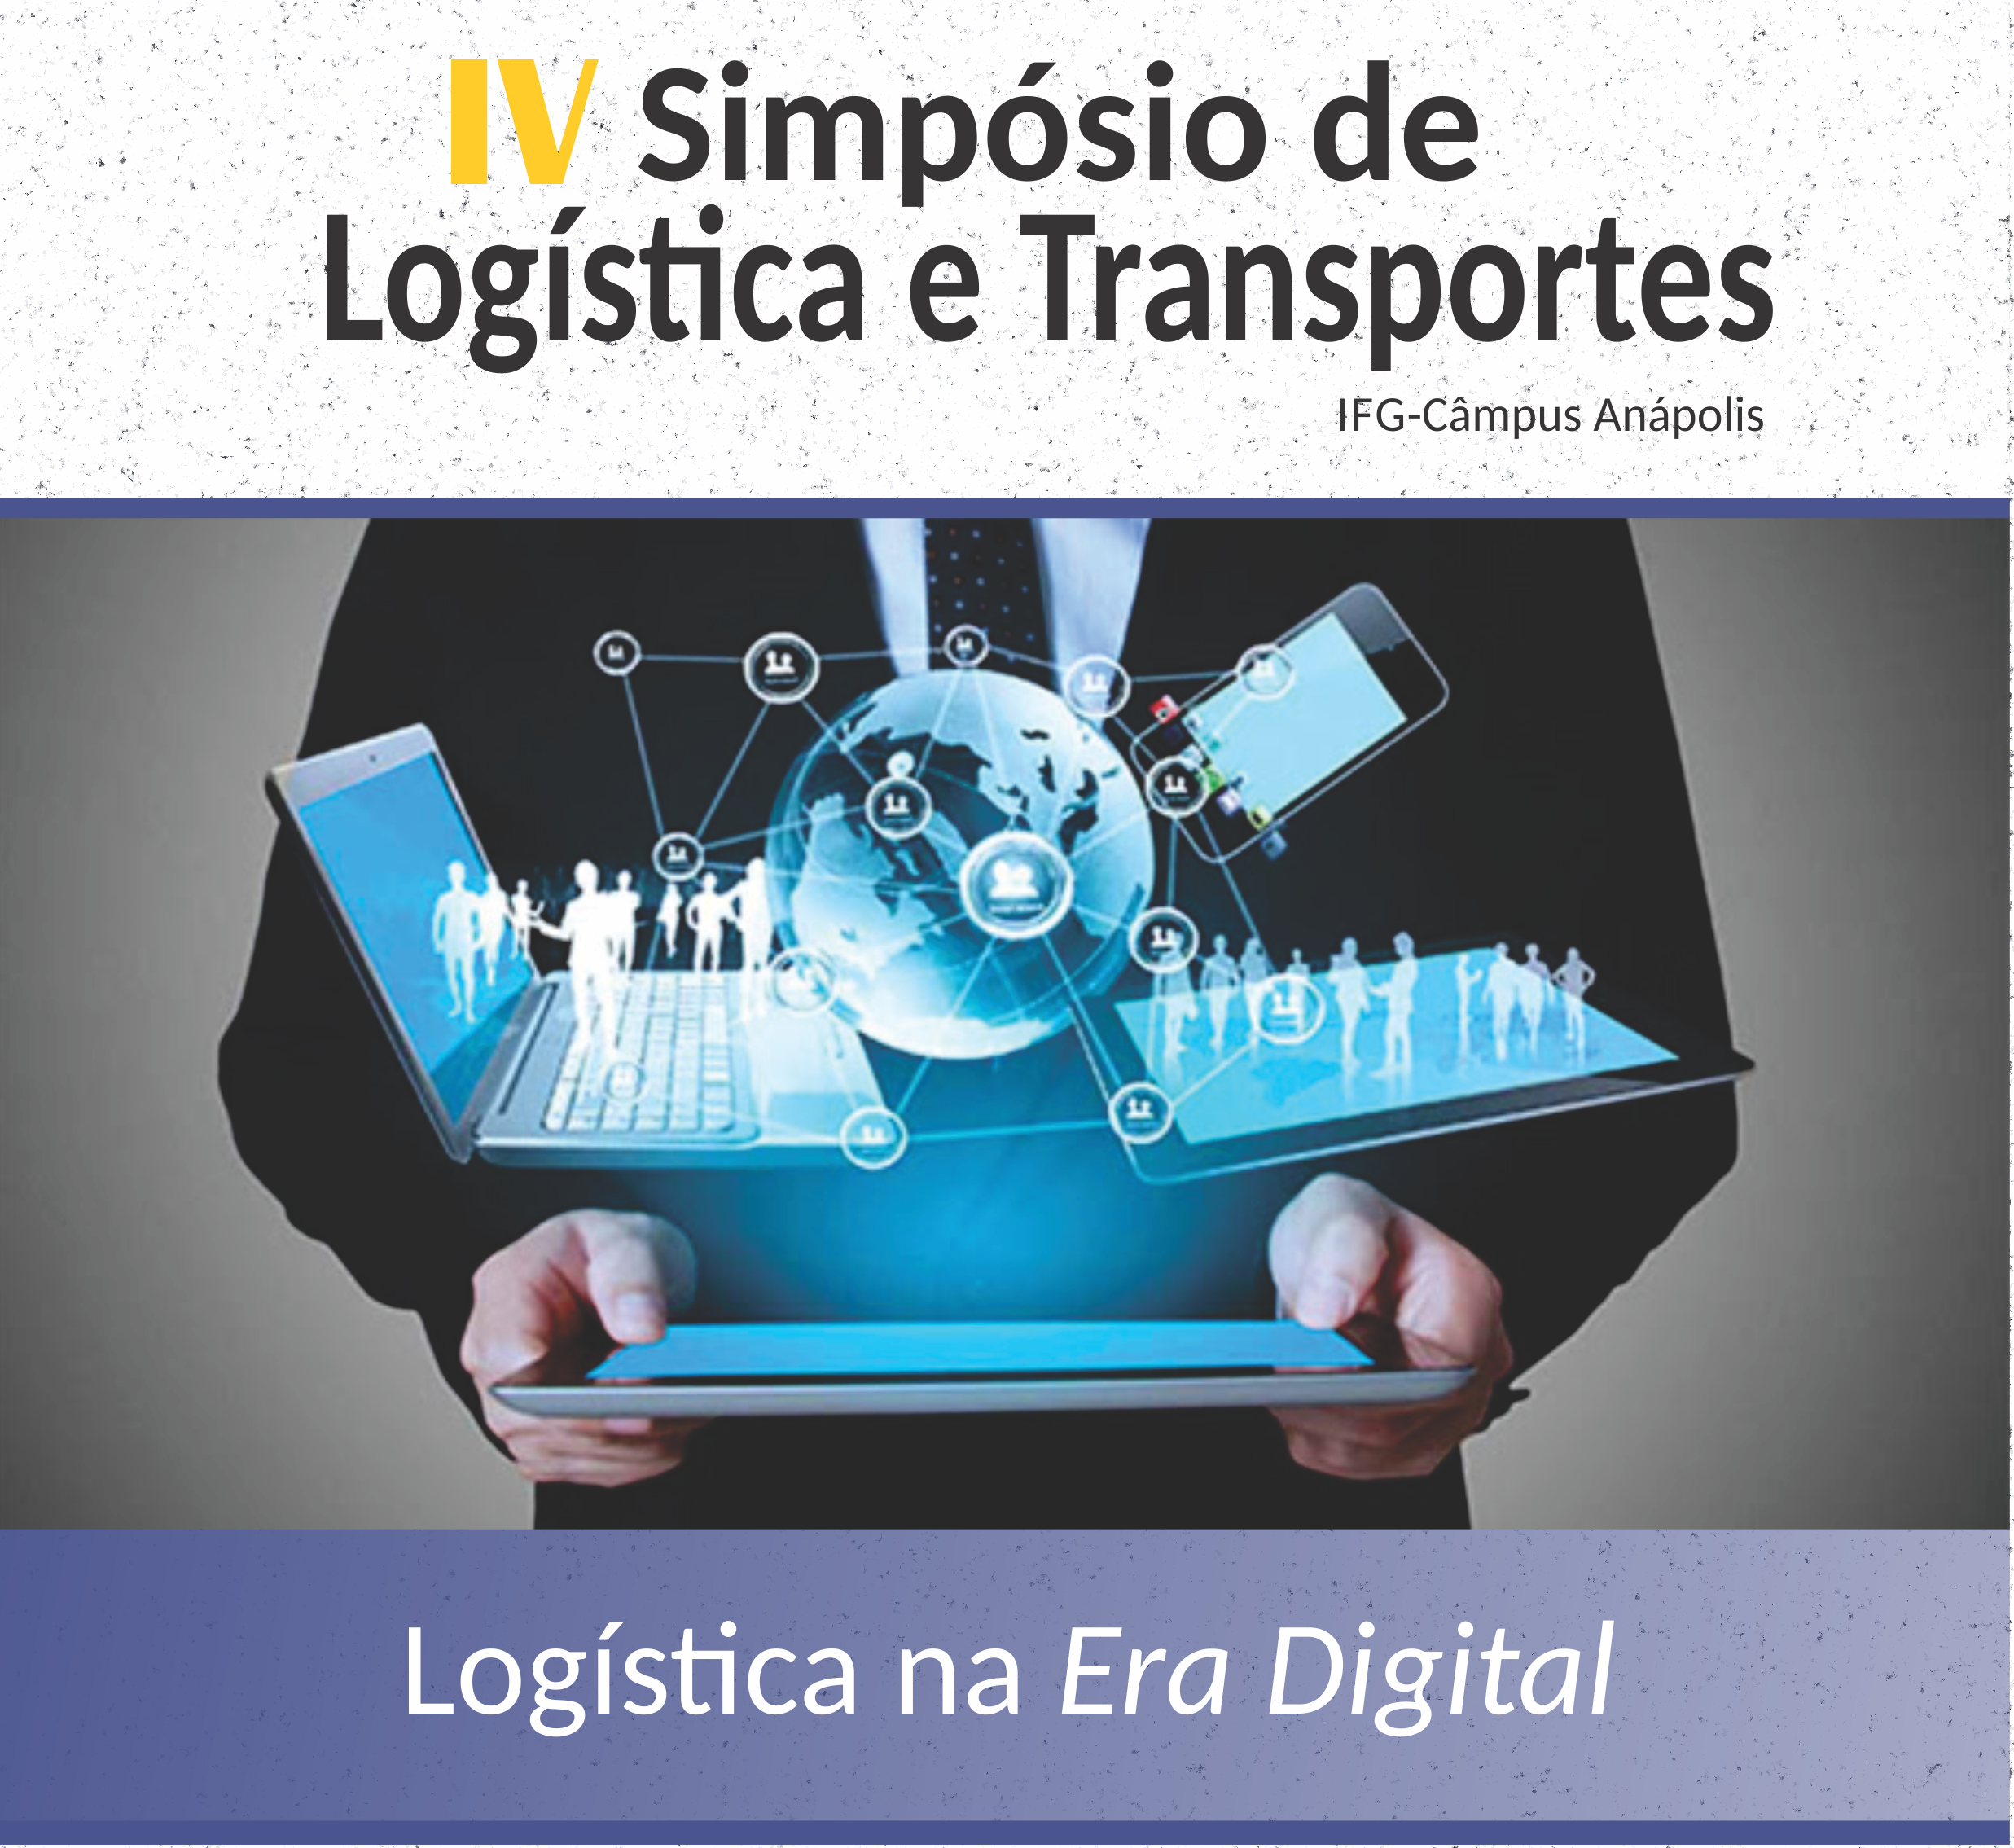 IV Simpósio de Logística e Transportes acontece de 6 a 8 de junho